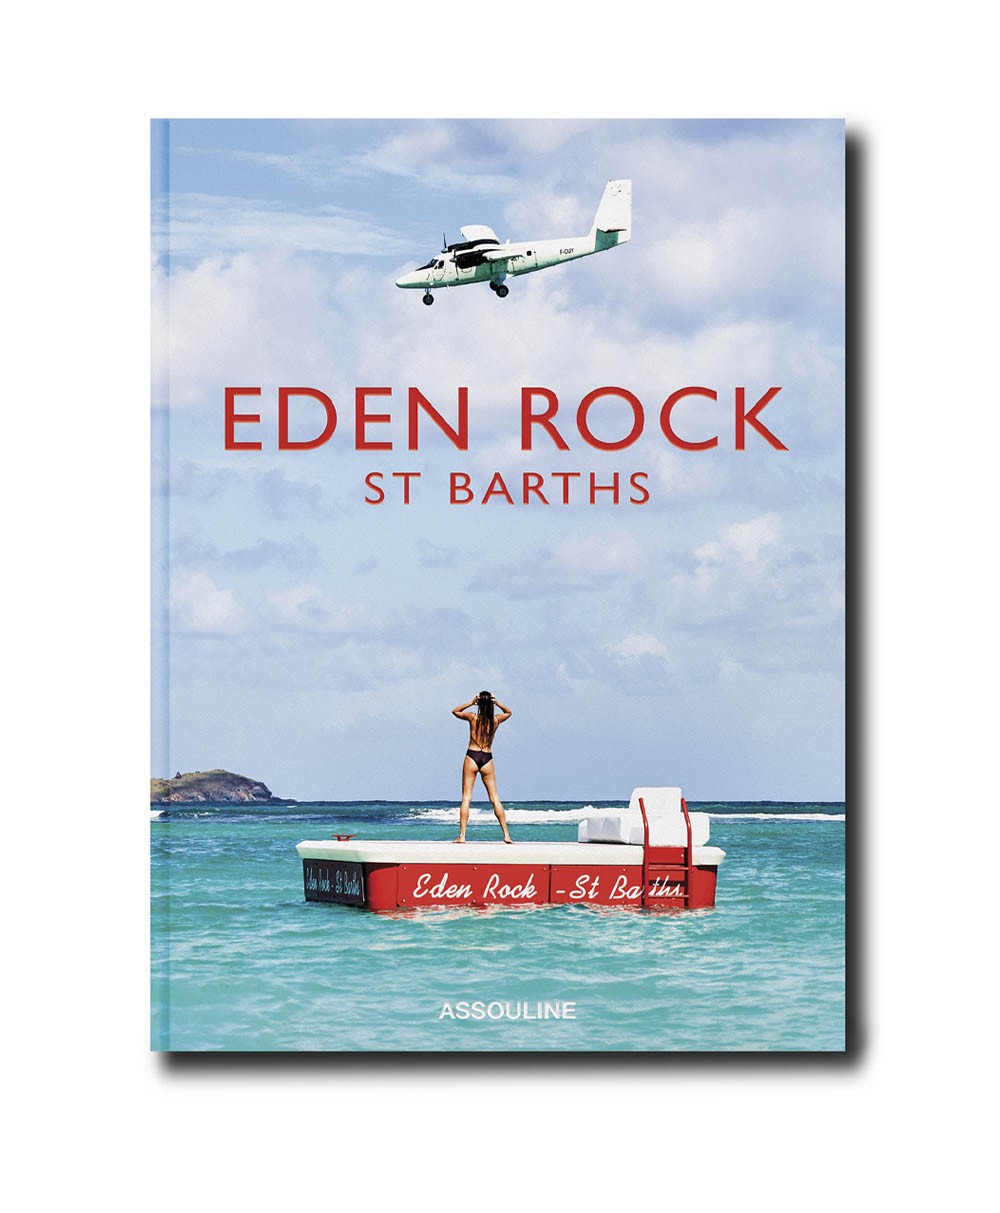 Cover des Bildbands Eden Rock von Assouline im RAUM concept store 